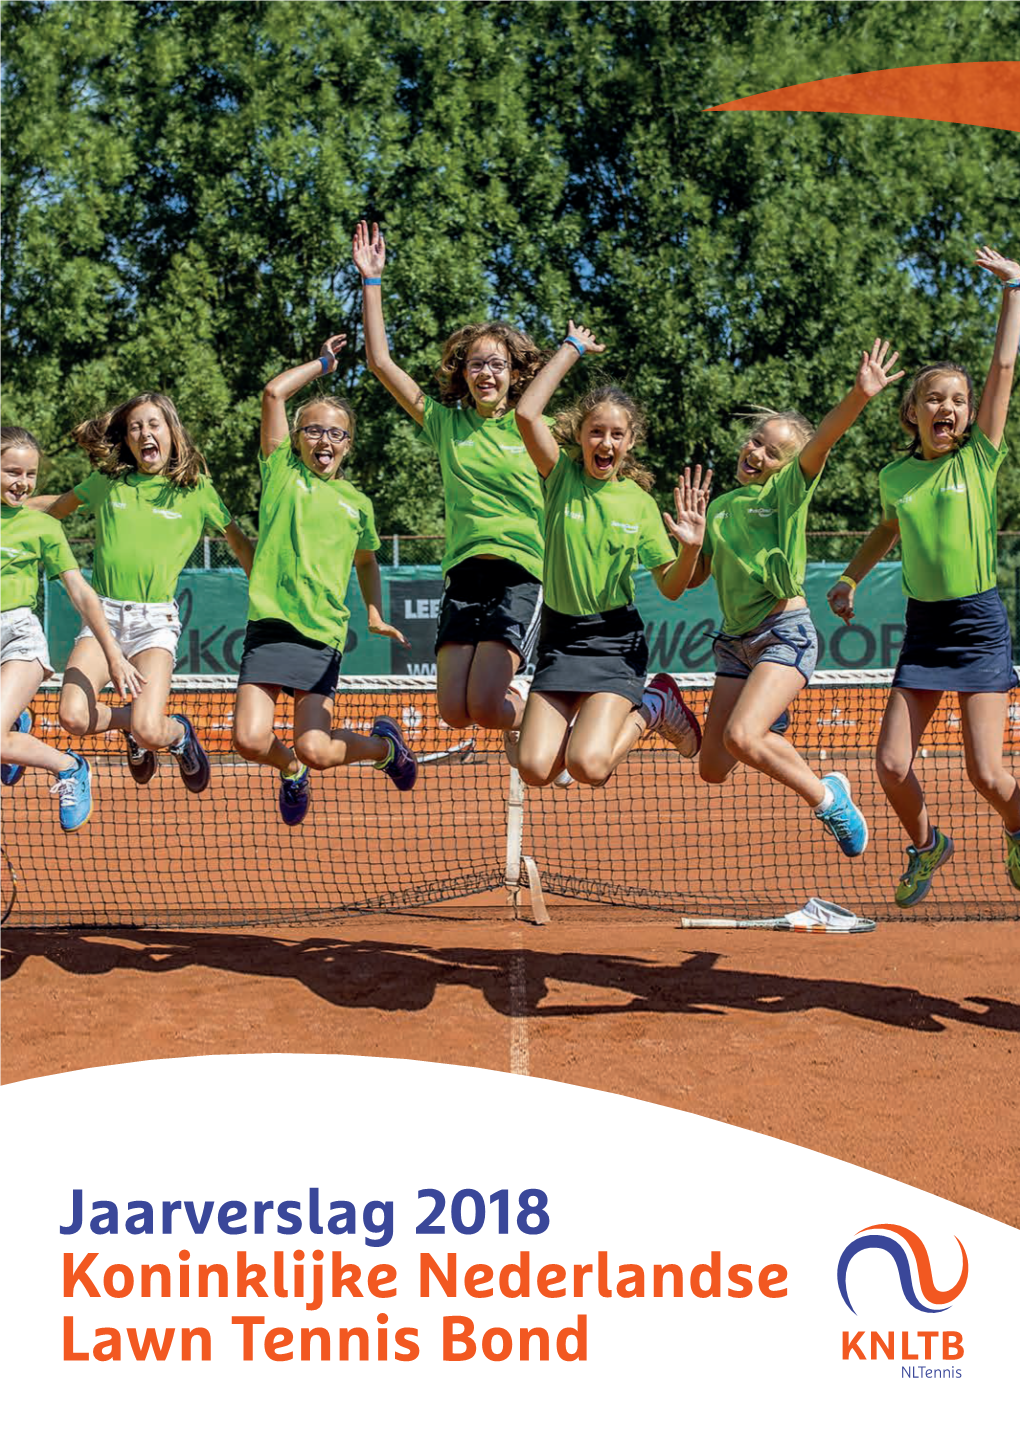 Jaarverslag 2018 Koninklijke Nederlandse Lawn Tennis Bond KNLTB Jaarverslag 2018